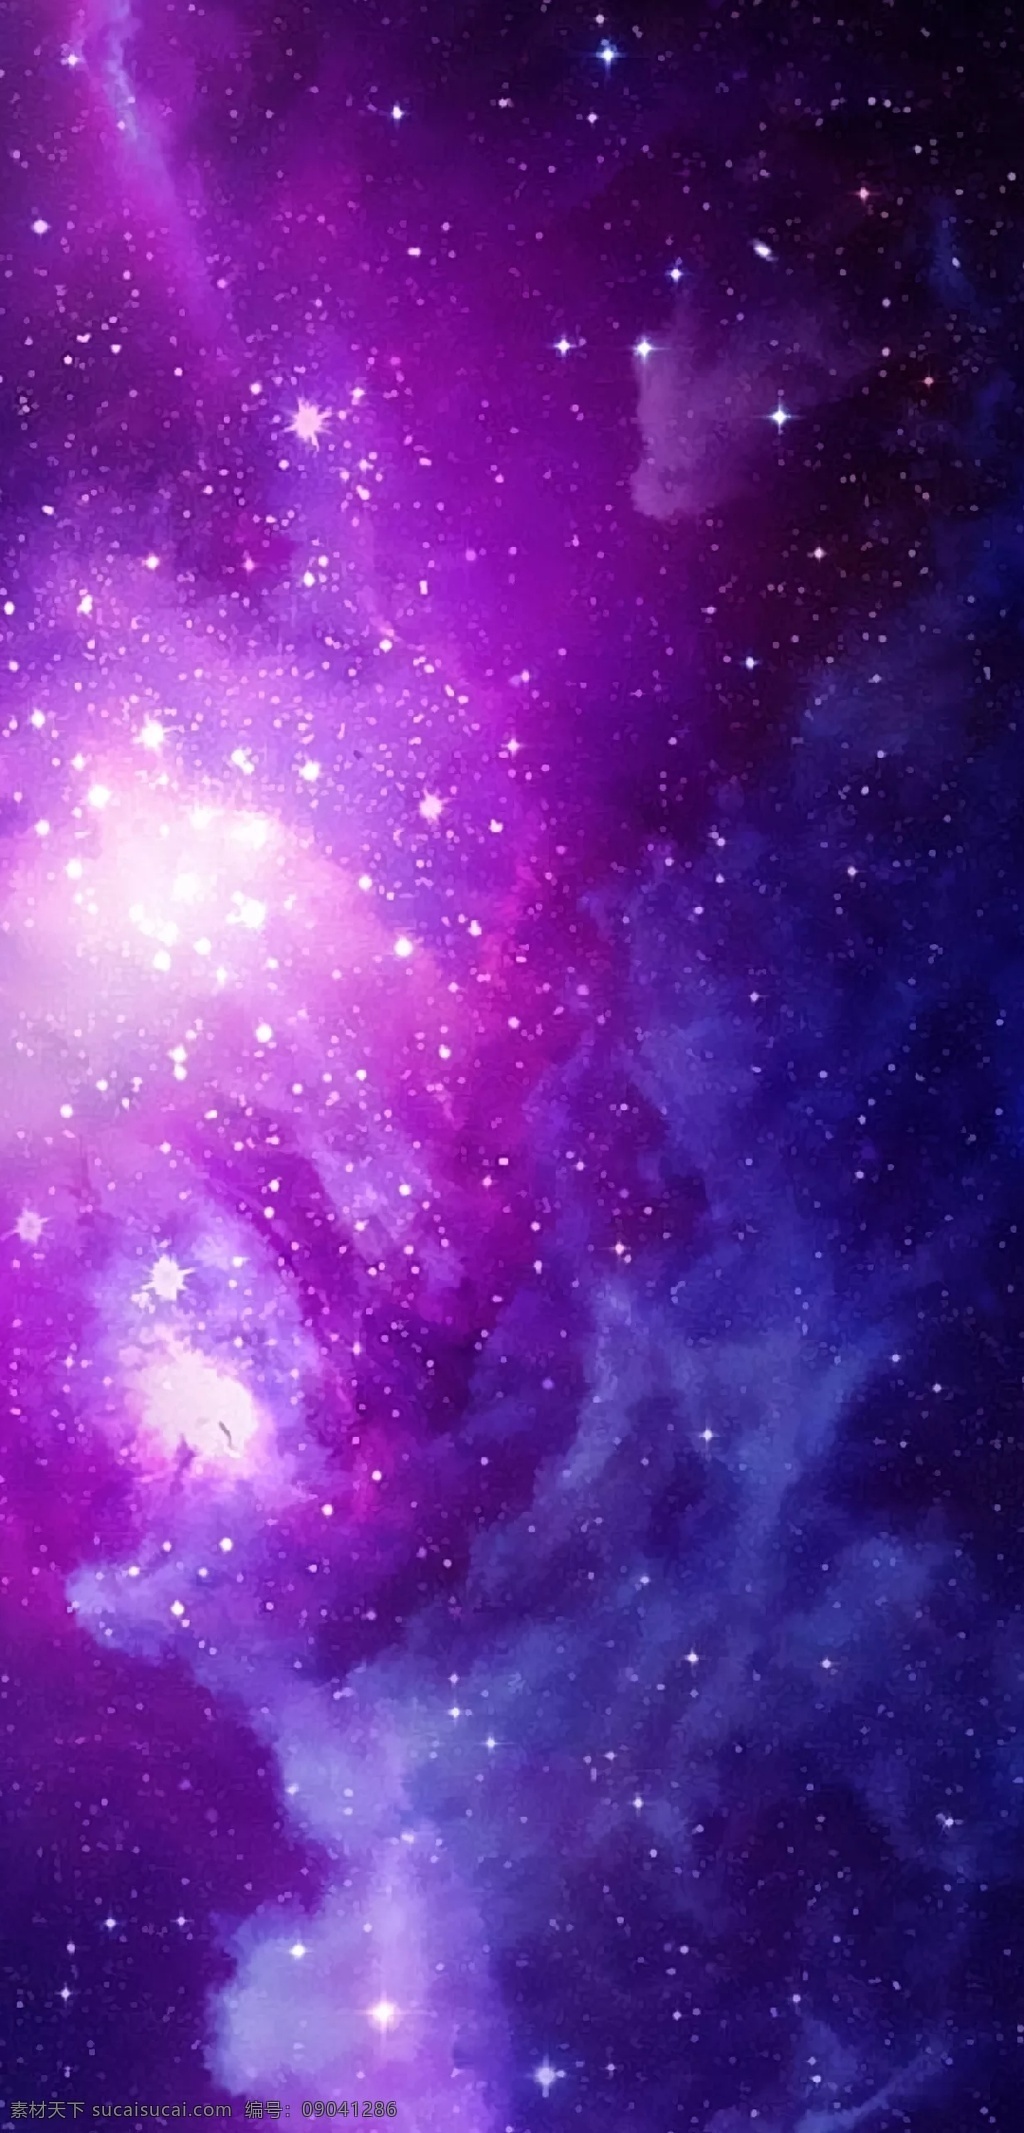 蓝紫云雾银河 手机高清桌布 星空 宇宙 星星 银河 星系 星河 星云 亮体 亮光 本星系群 天文 宇宙星系 浩瀚 星团 滤光 紫光 蓝光 手机 高清 桌布